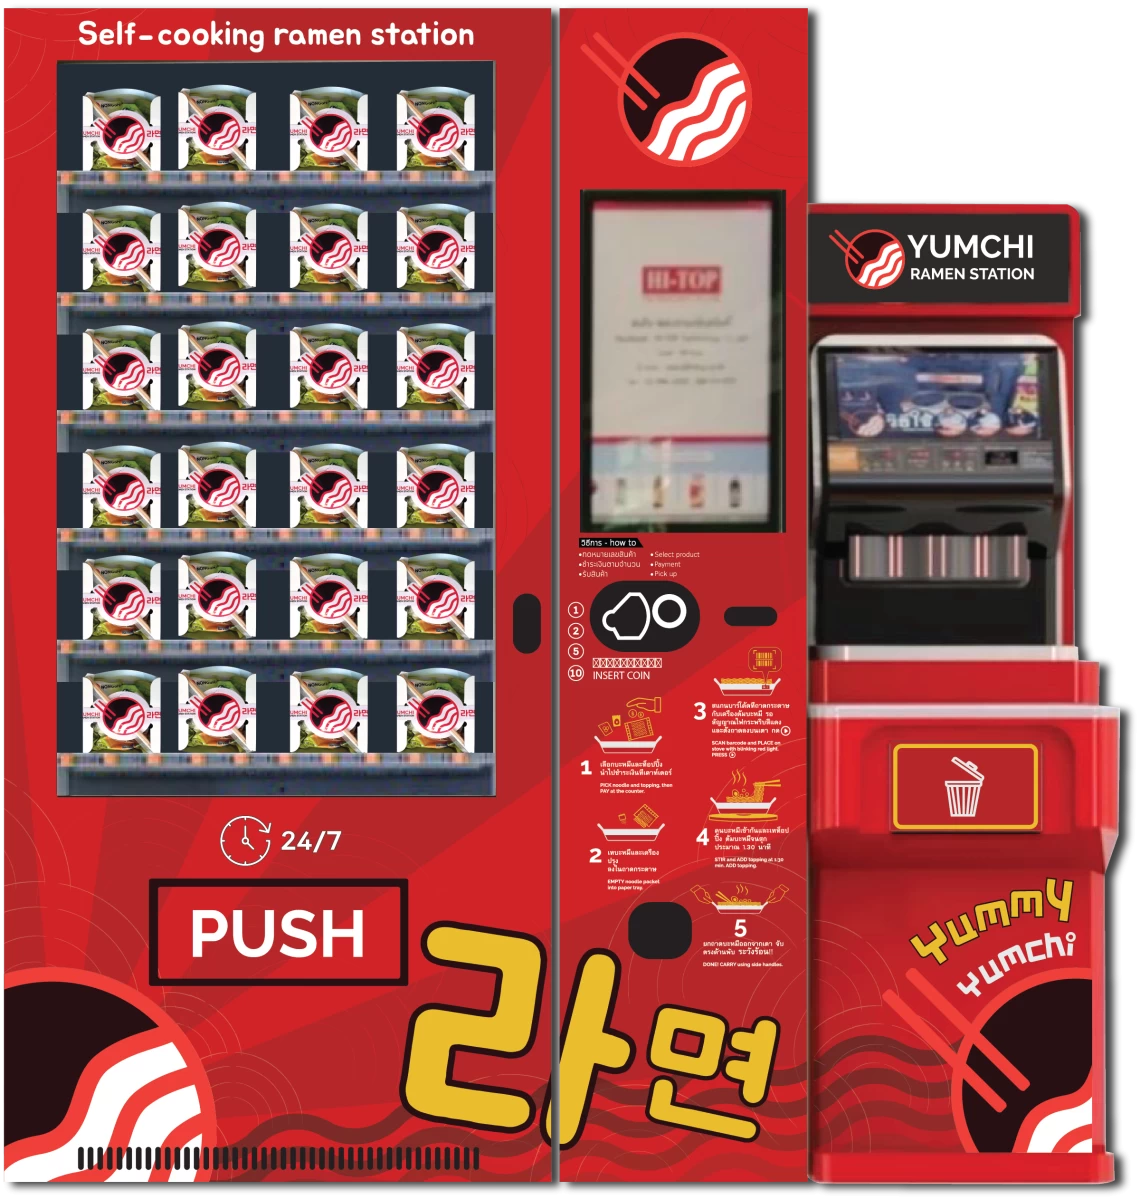 Yumchi Vending Station 299,000.-